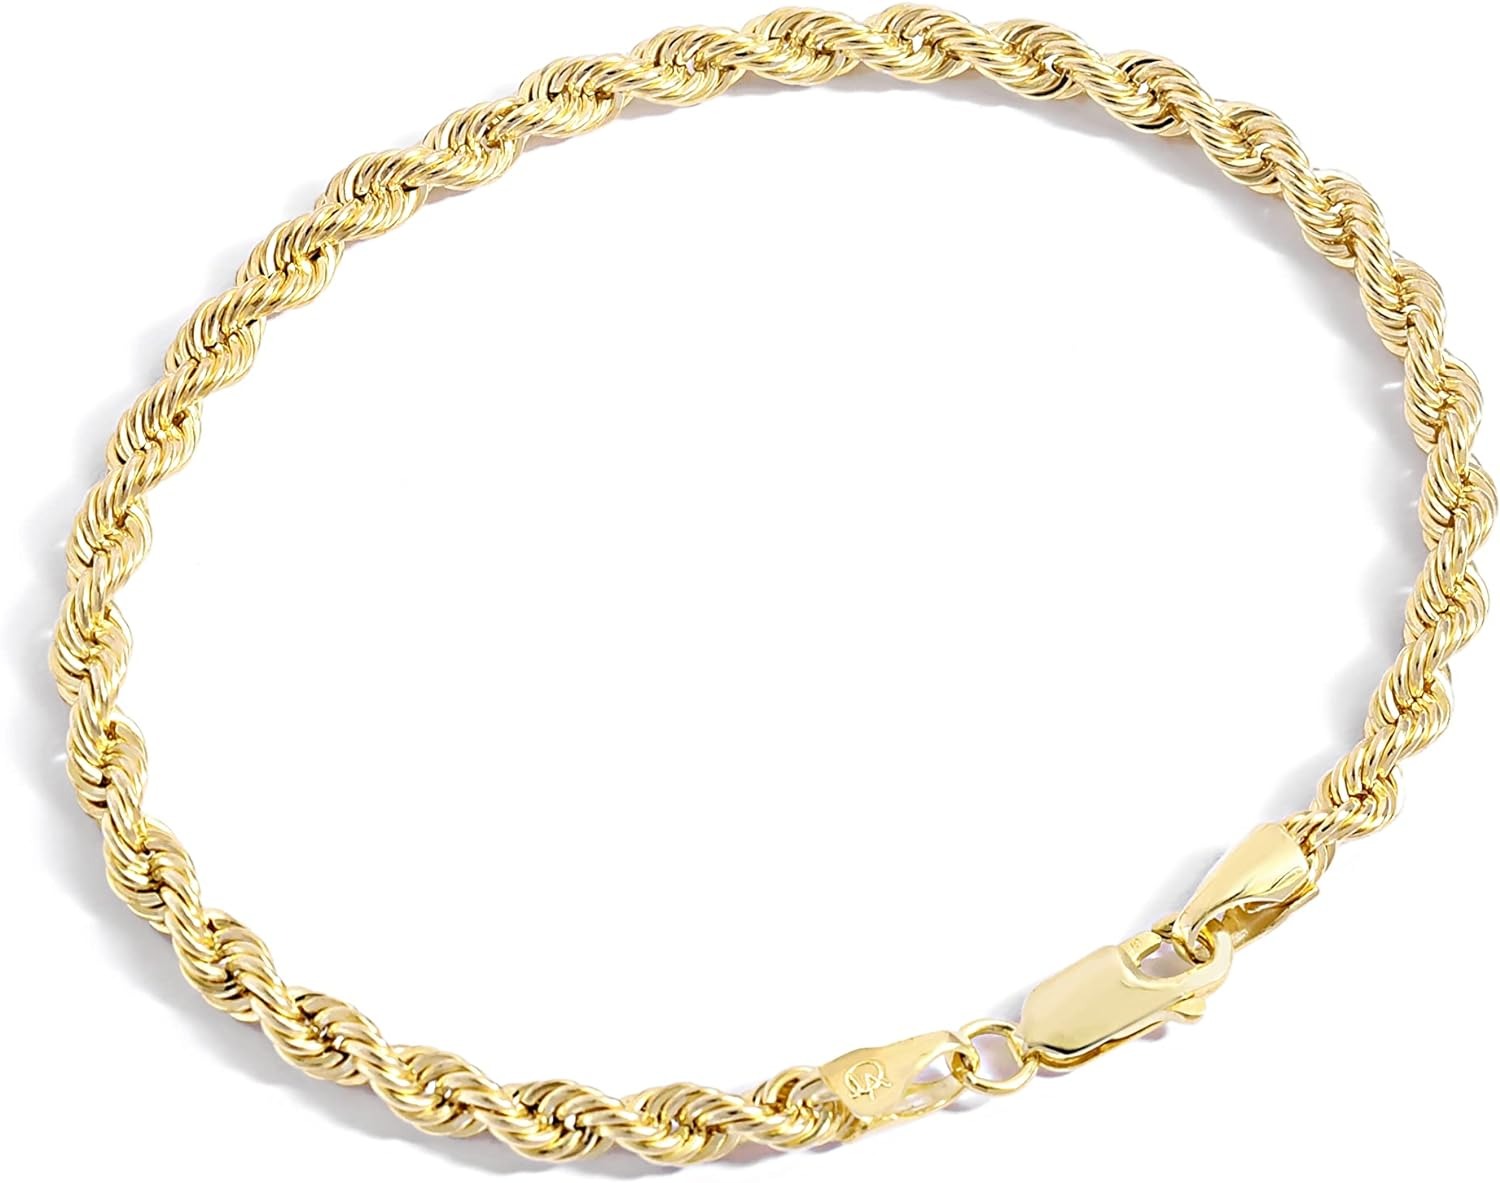 Coleção de pulseiras de corrente cheia de ouro do Jewelry Atelier - pulseiras de corrente de corda cheia de ouro amarelo maciço 14K para mulheres e homens com tamanhos diferentes (2,7 mm, 3,8 mm)